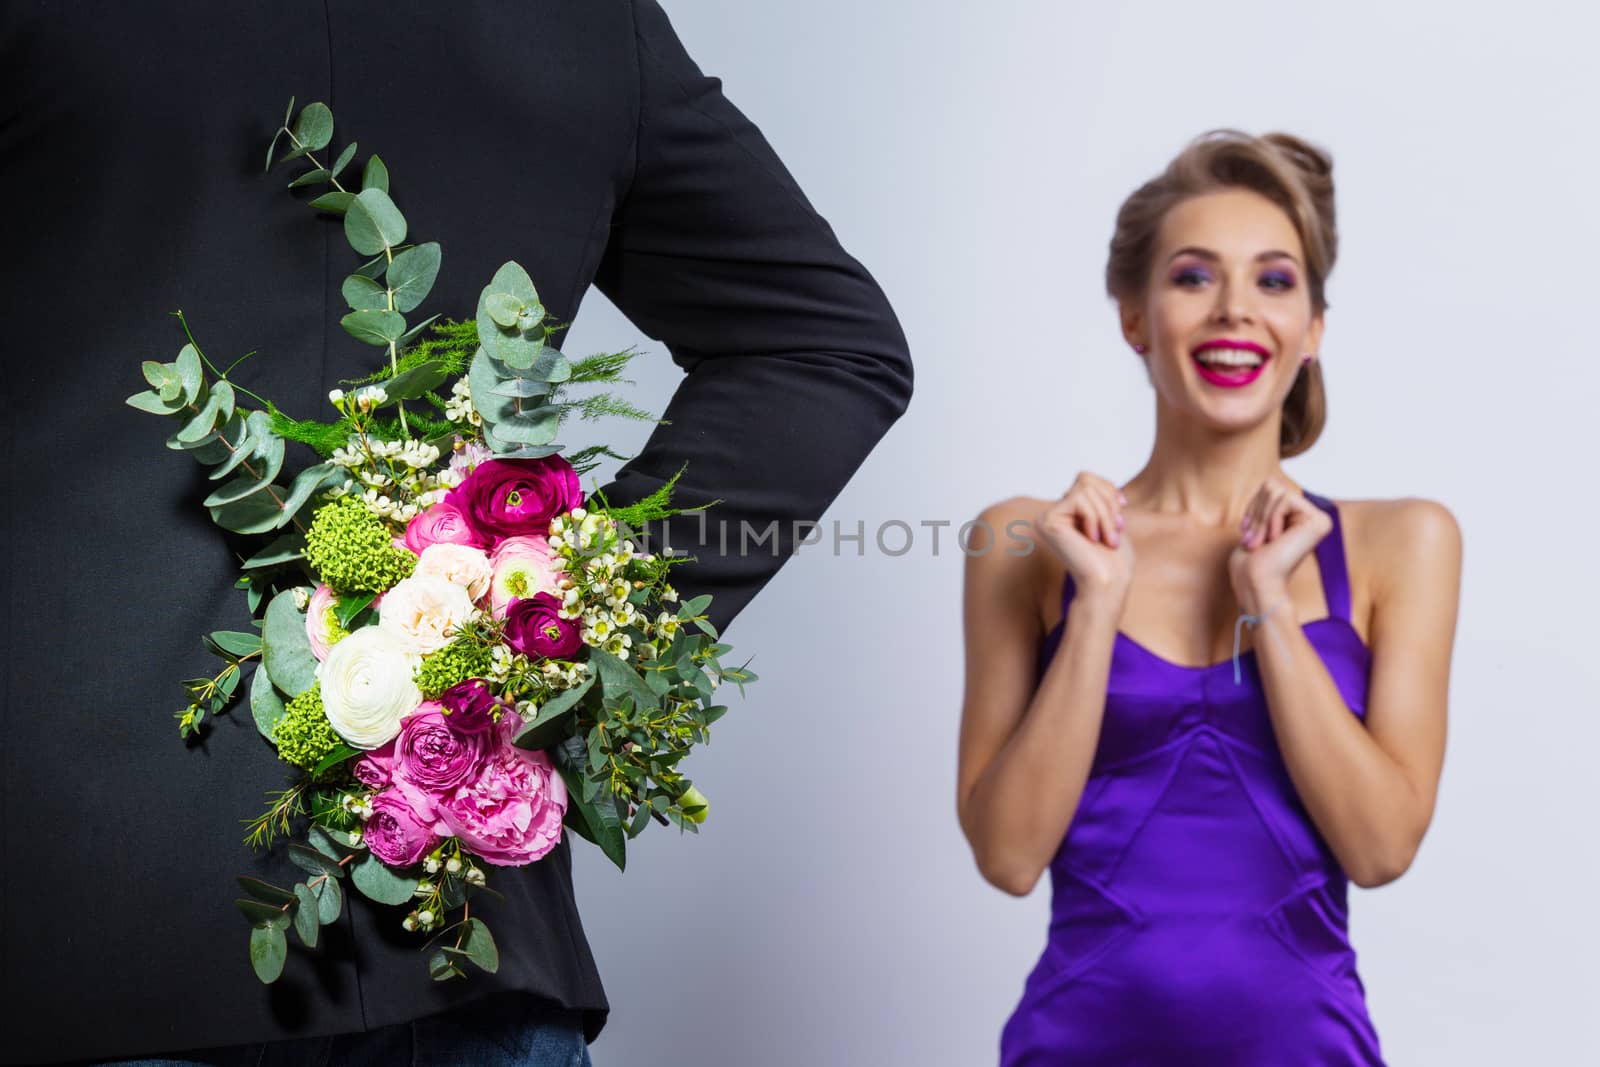 Man brings flowers to woman by ALotOfPeople